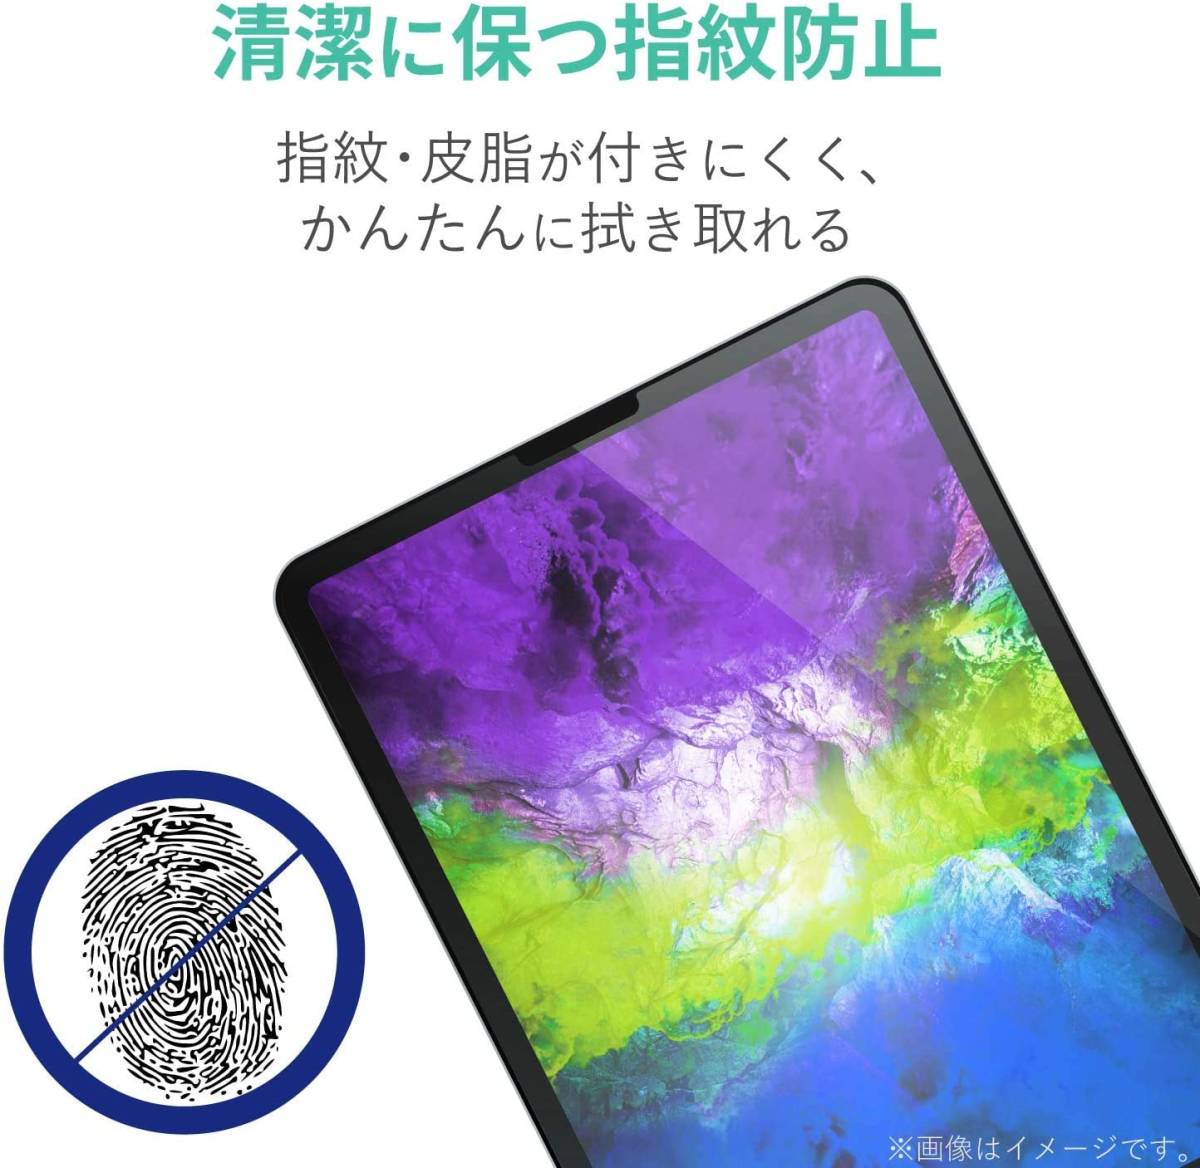 エレコム iPad Pro 11インチ・iPad Air 4 2020年モデル 液晶保護フィルム シール シート エアーレス ハードコート加工 防指紋 高光沢 491